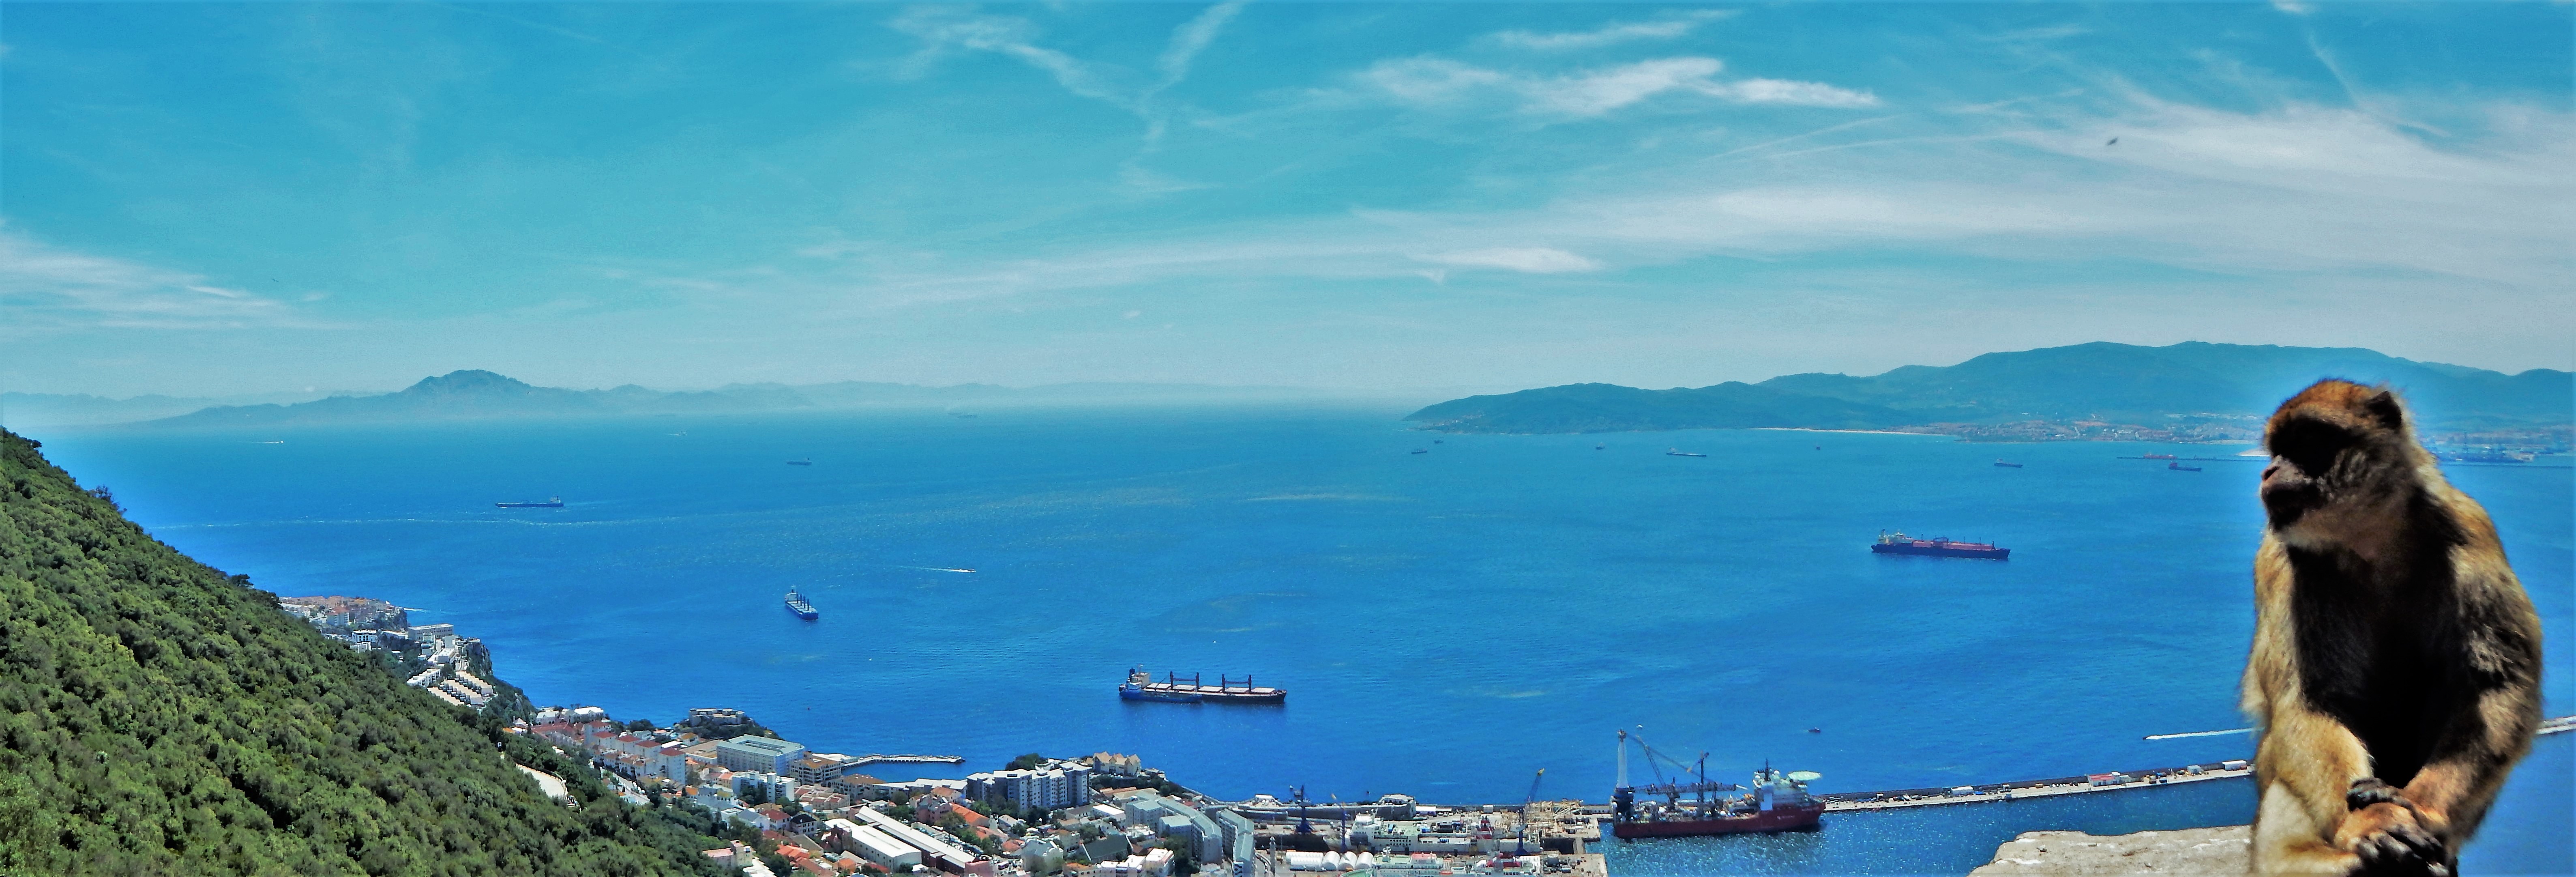 Gibraltar_1